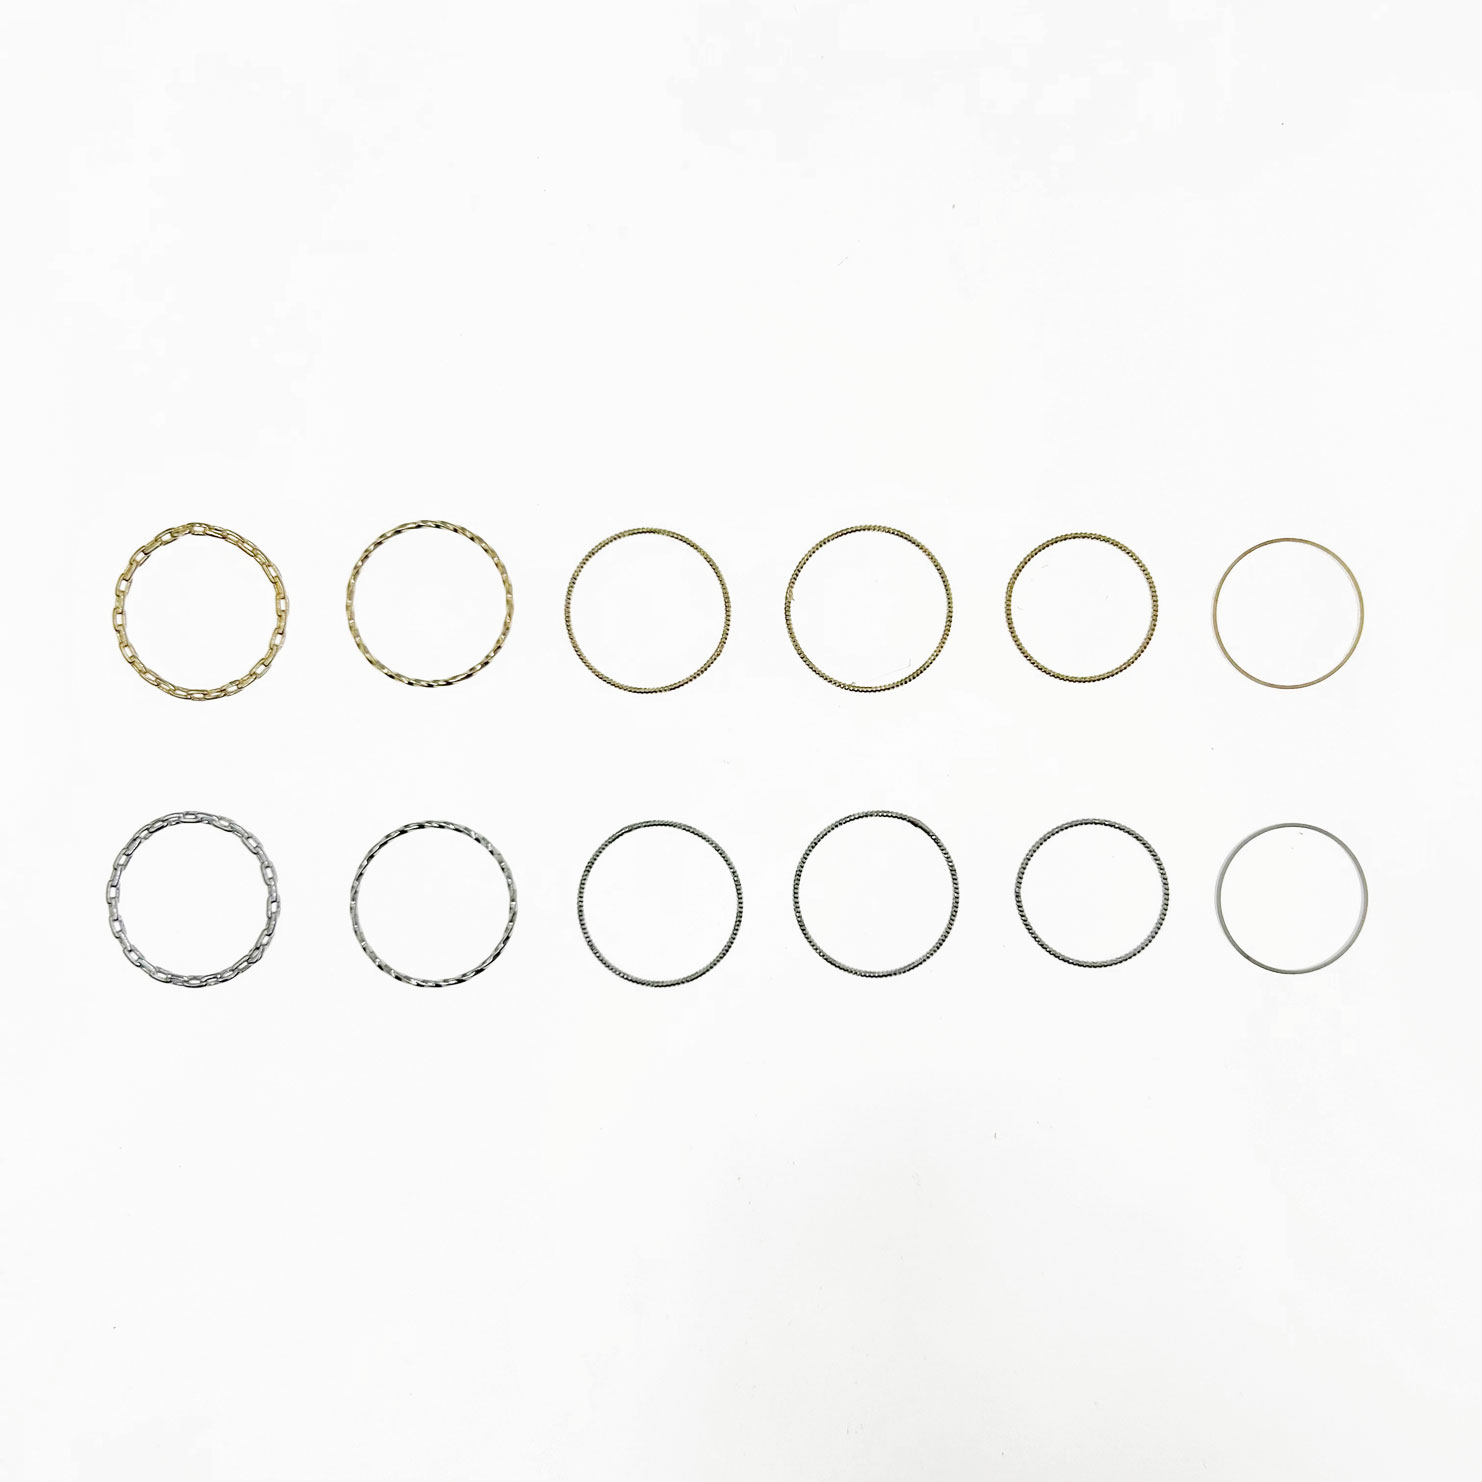 韓國 金屬 造型一組六入 雙色 搭配 戒指